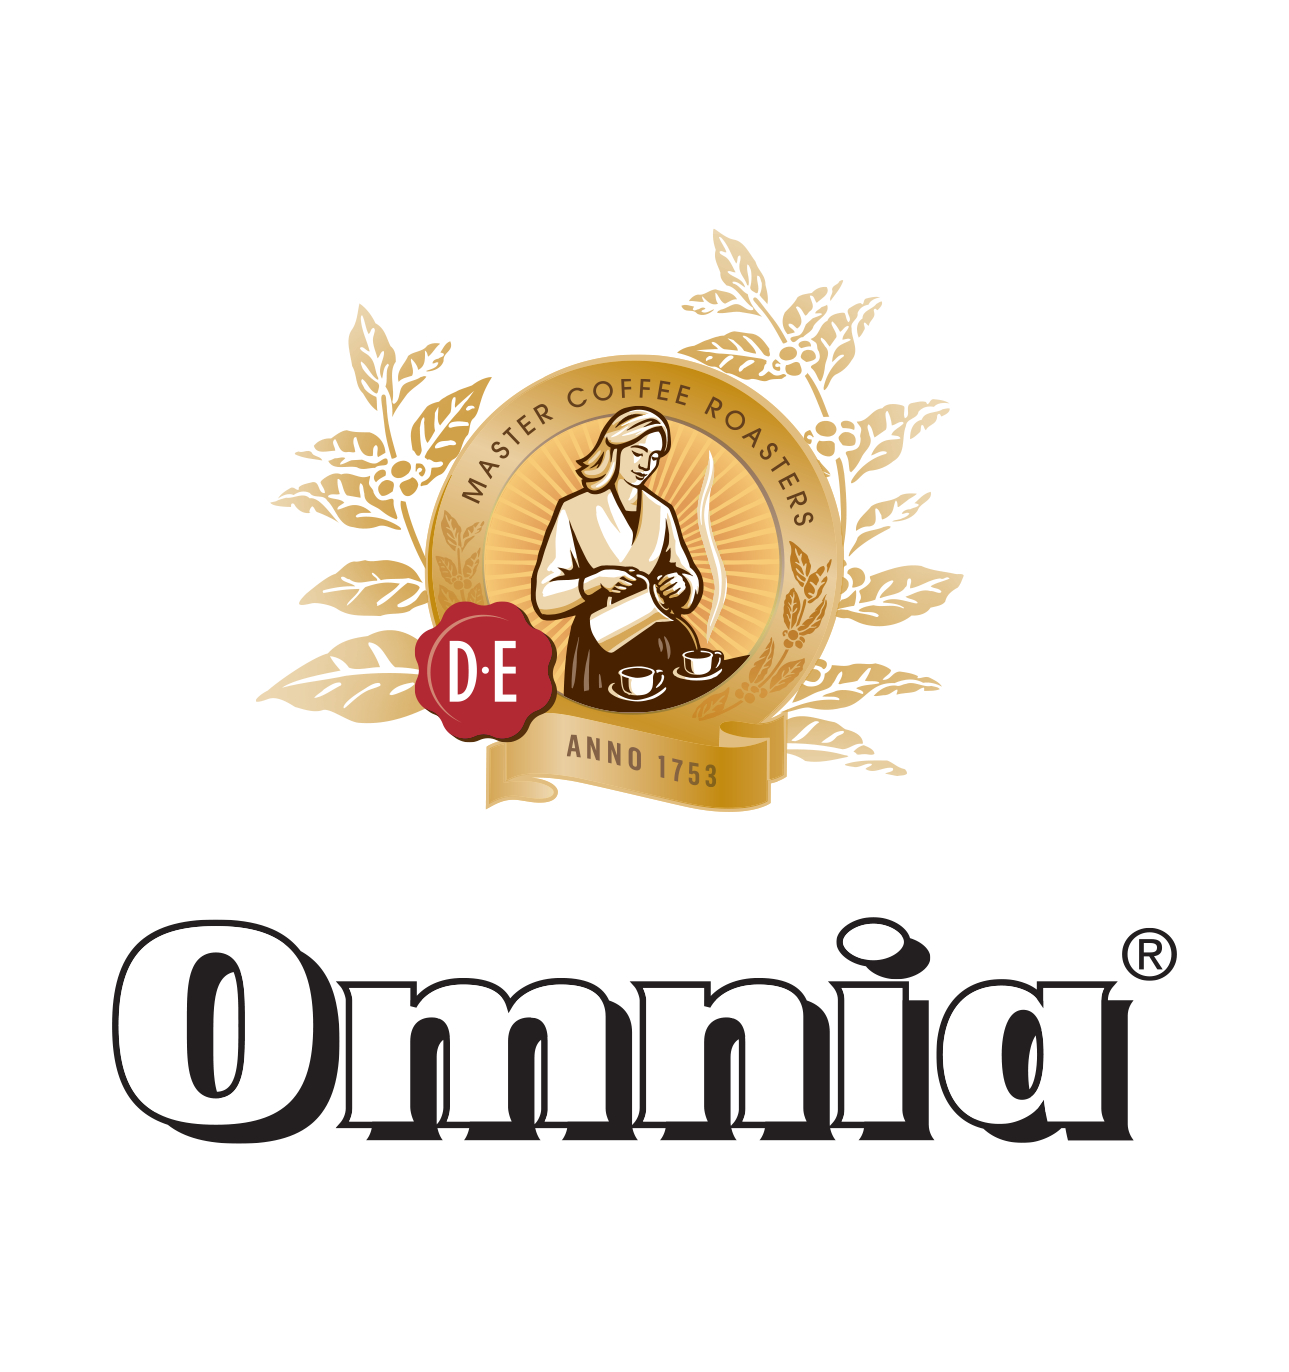 Douwe Egberts Omnia logo